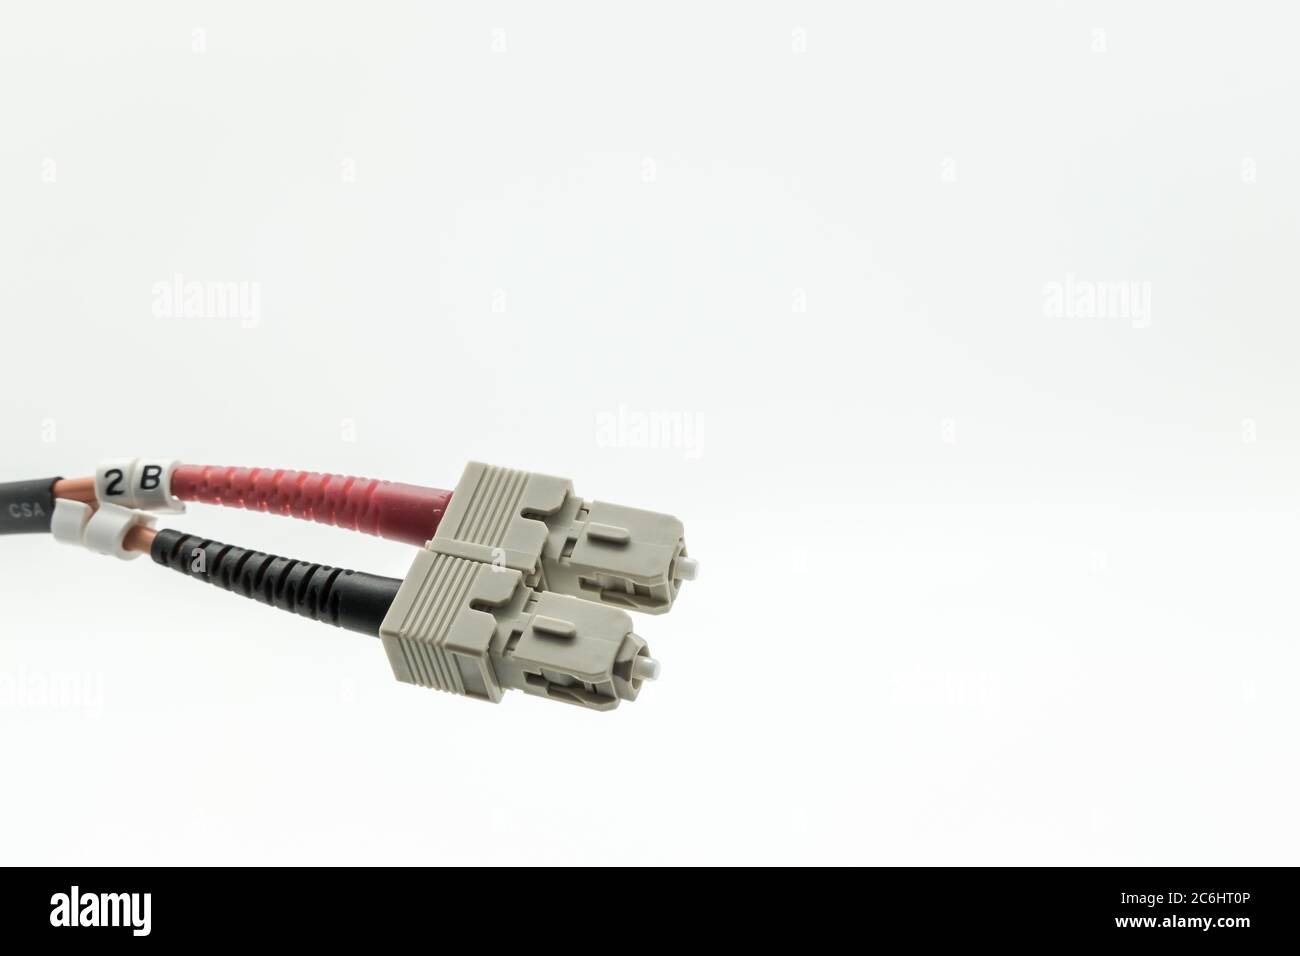 Image macro des cordons de brassage à fibre optique Internet ultra-rapides utilisés pour les connexions réseau optiques à haut débit. Illustré comme une paire de connecteurs duplex. Banque D'Images